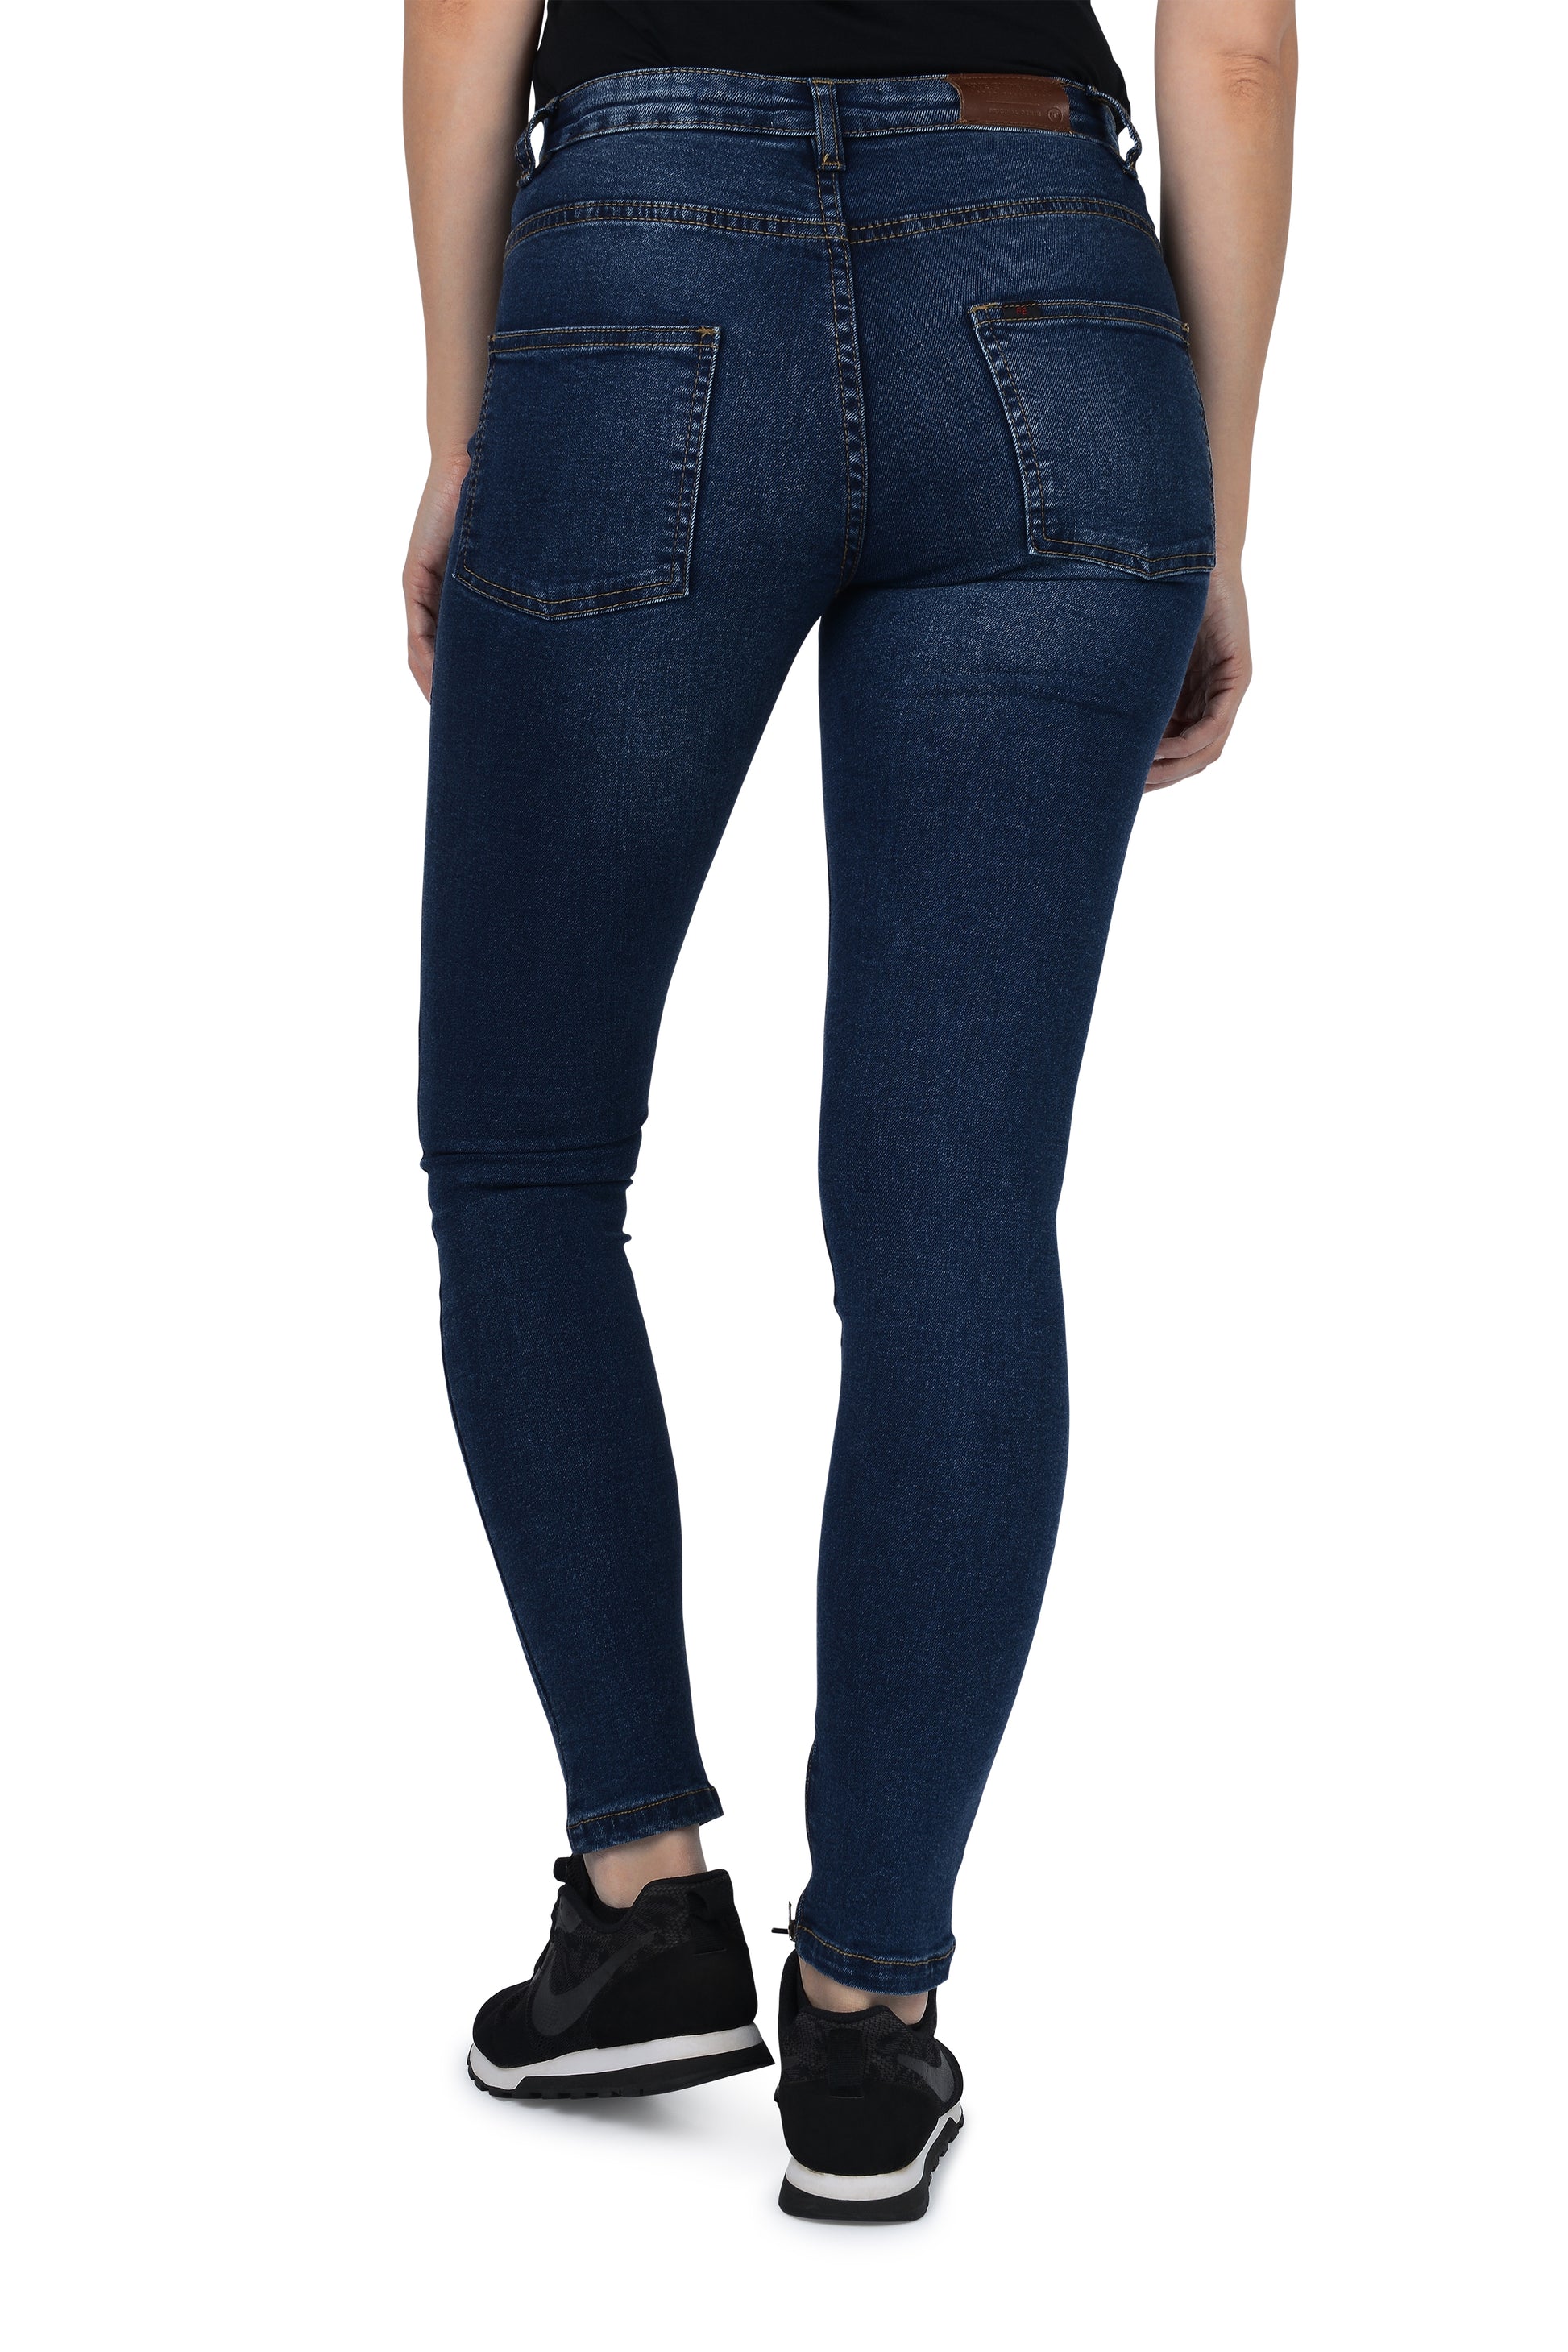 https://www.fiveemperors.com/cdn/shop/products/slim-fit-skinny-shape-women-jeans-uk.jpg?v=1624273071&width=1946